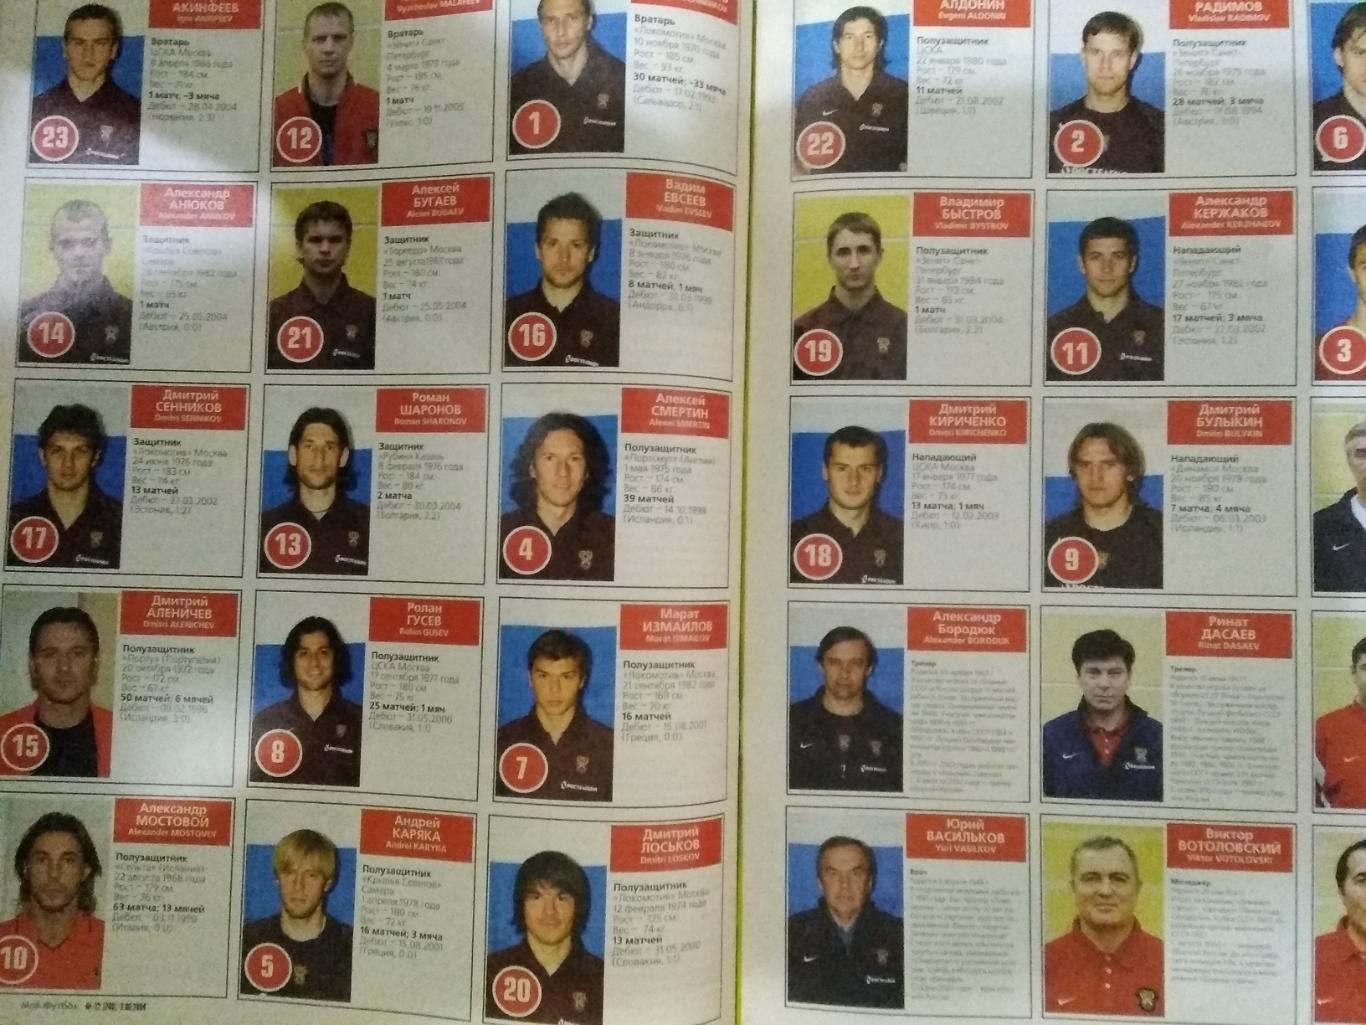 Журнал.Мой футбол №22 2004 г. (Чемпионат Европы) (постер). 1